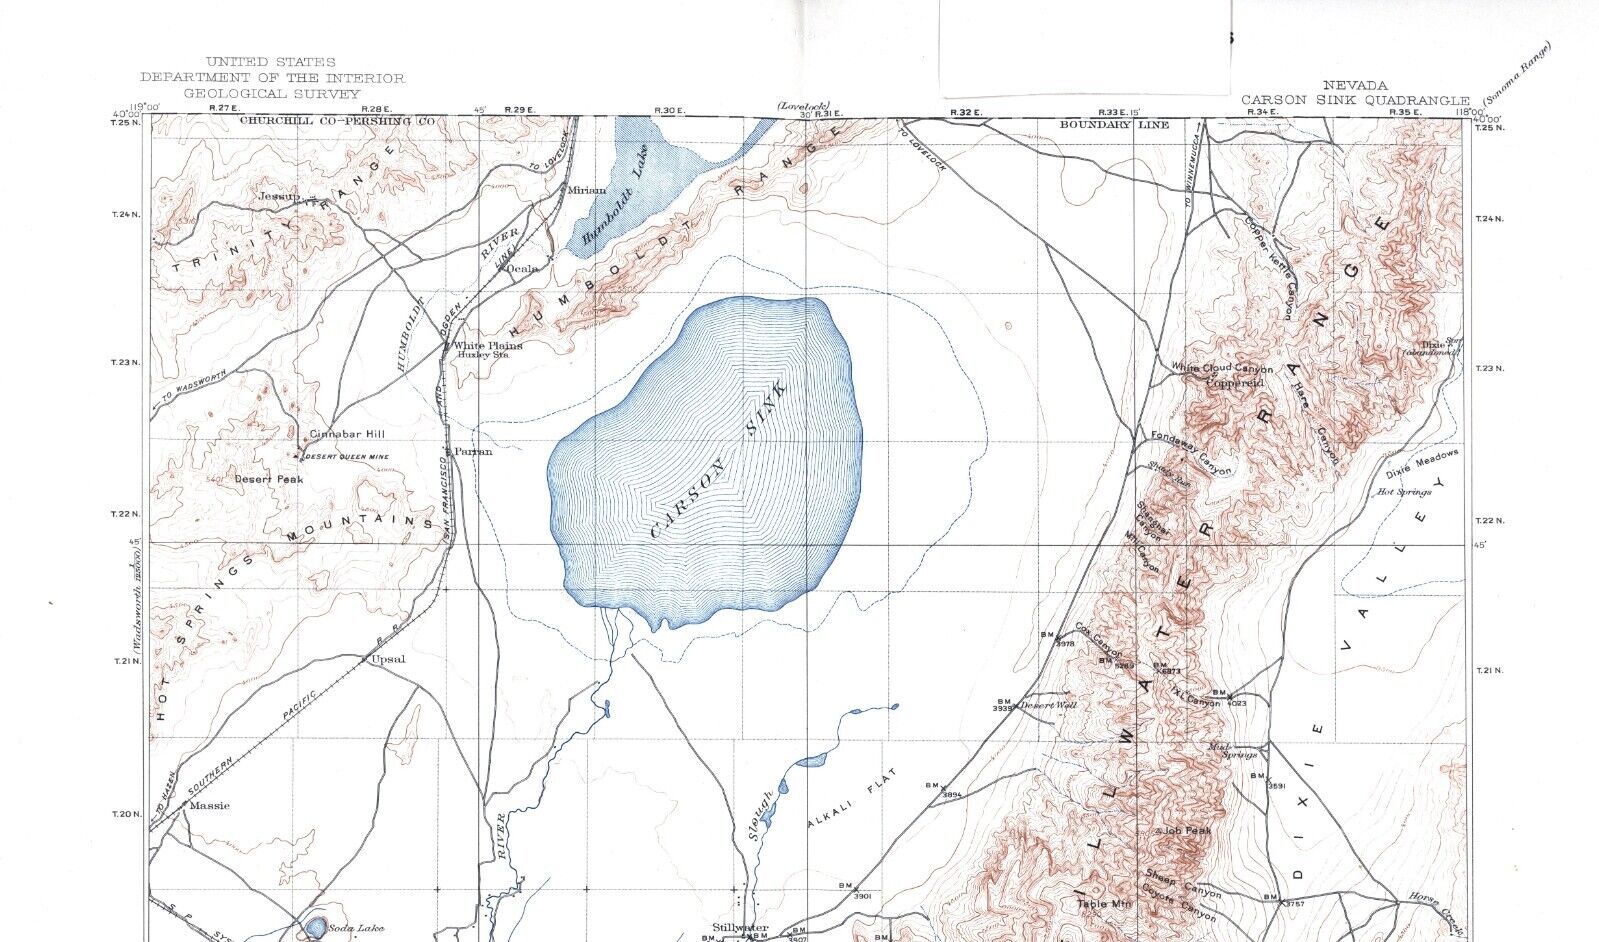 Carson Sink Quadrangle Nevada 1908 Topo Map USGS 1:250,000 Scale Topographic